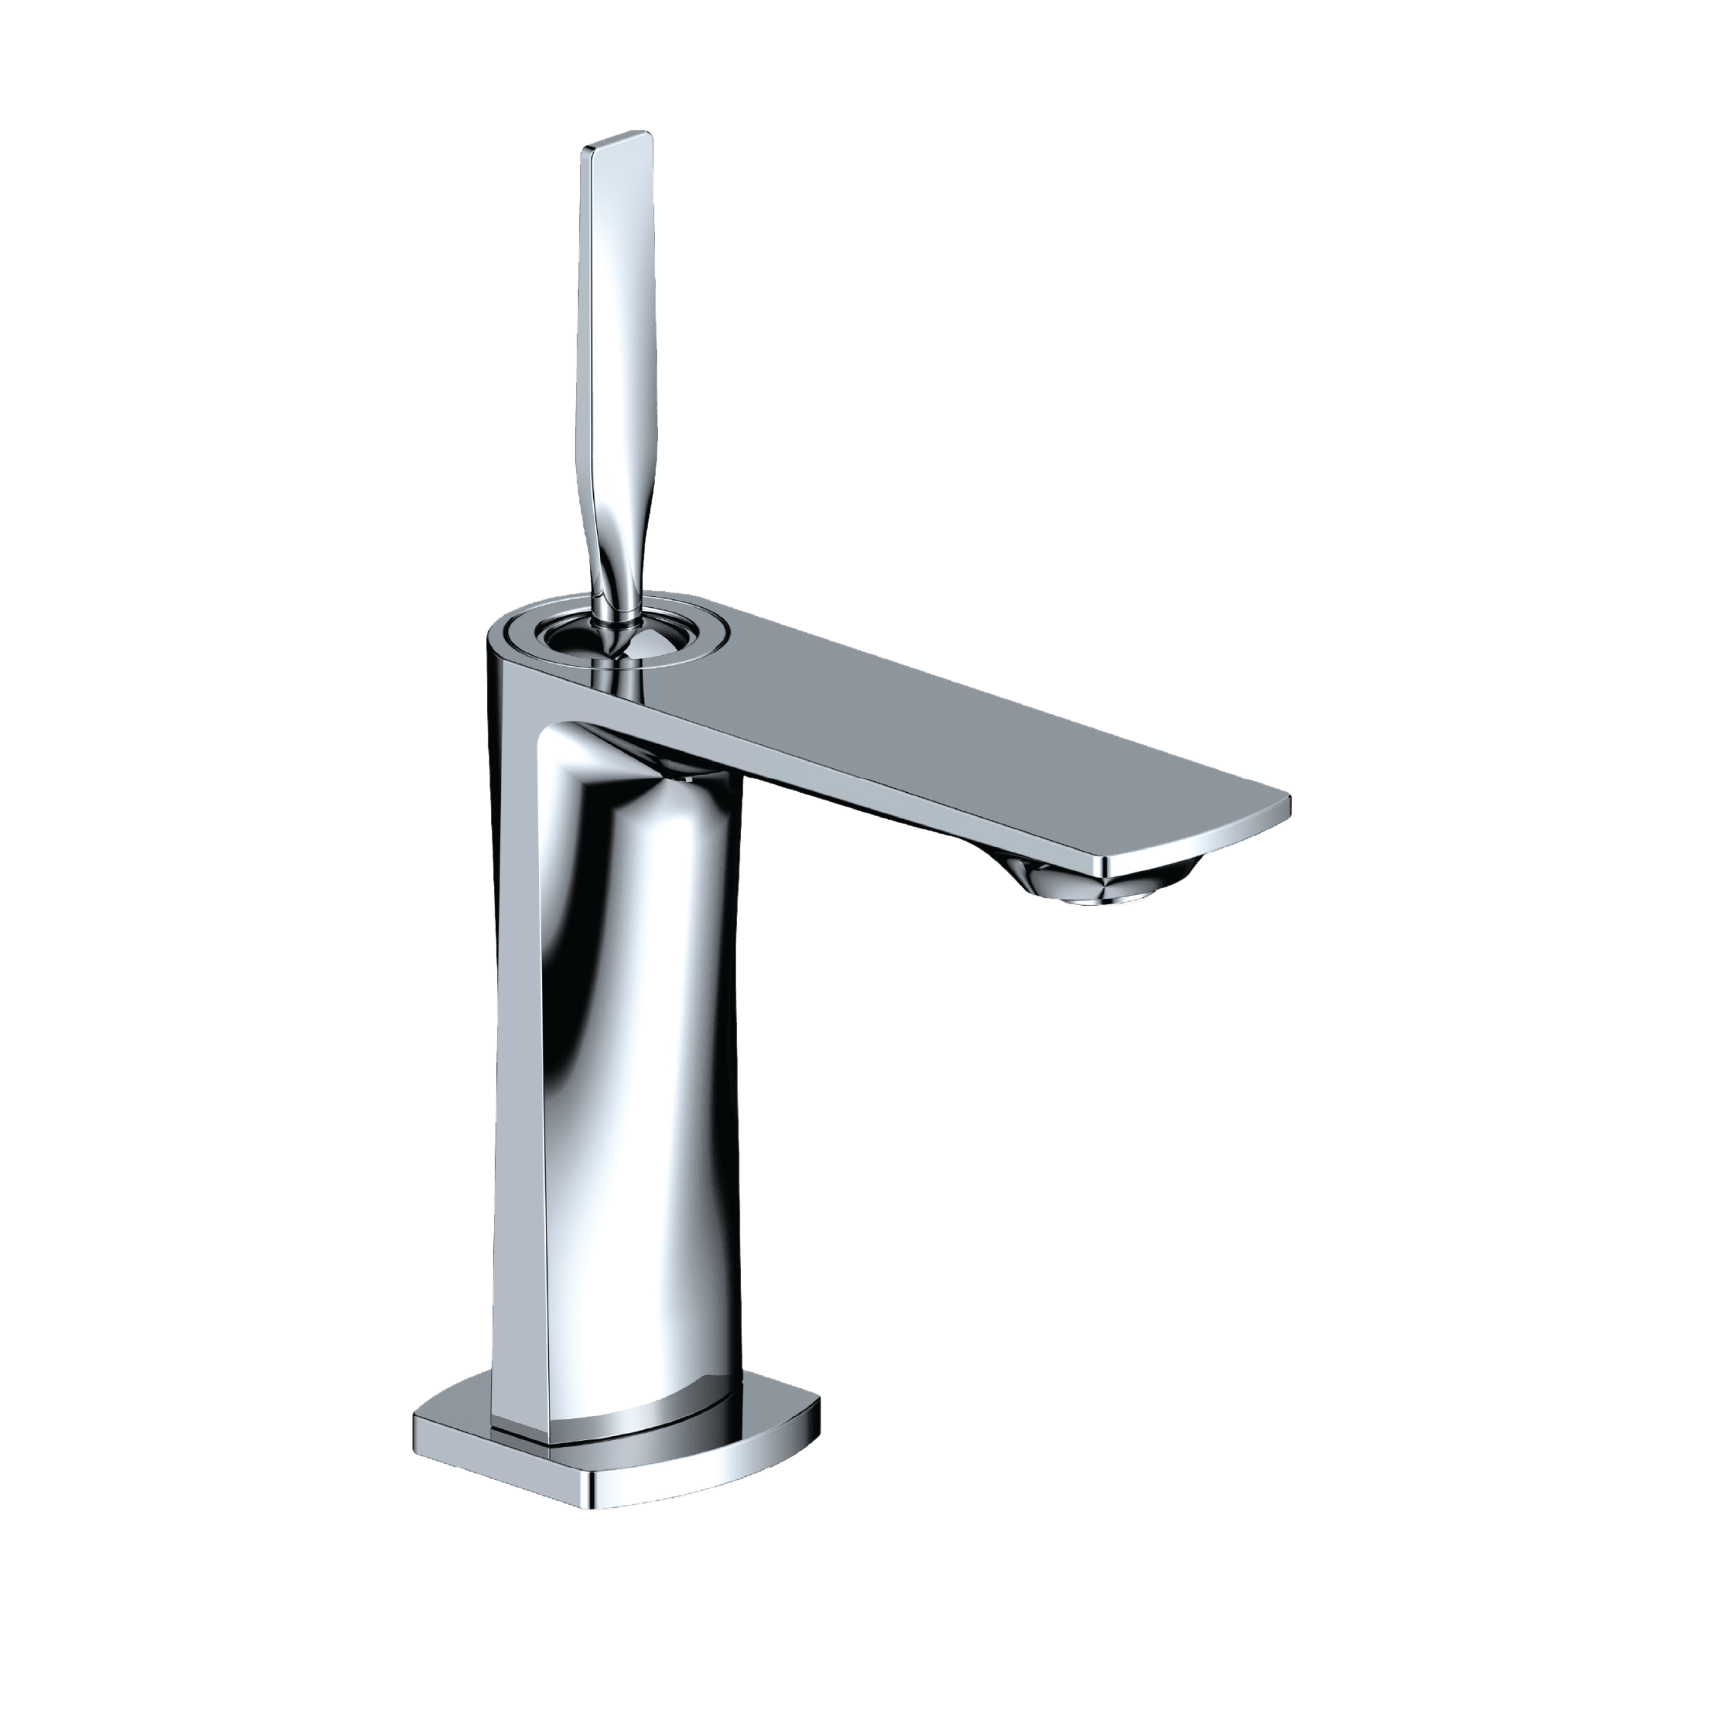 Santec 3880js Element Bathroom Faucet Qualitybath Com